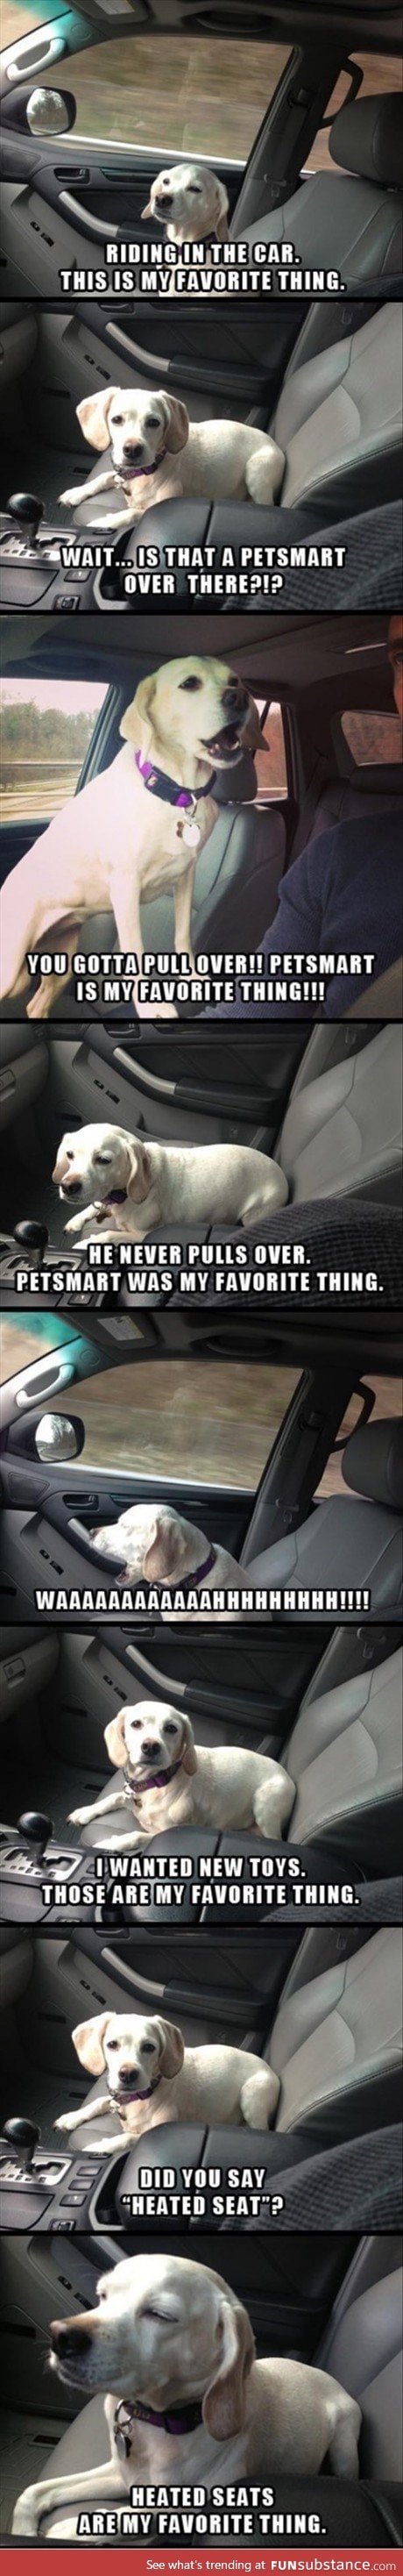 Dog on car ride